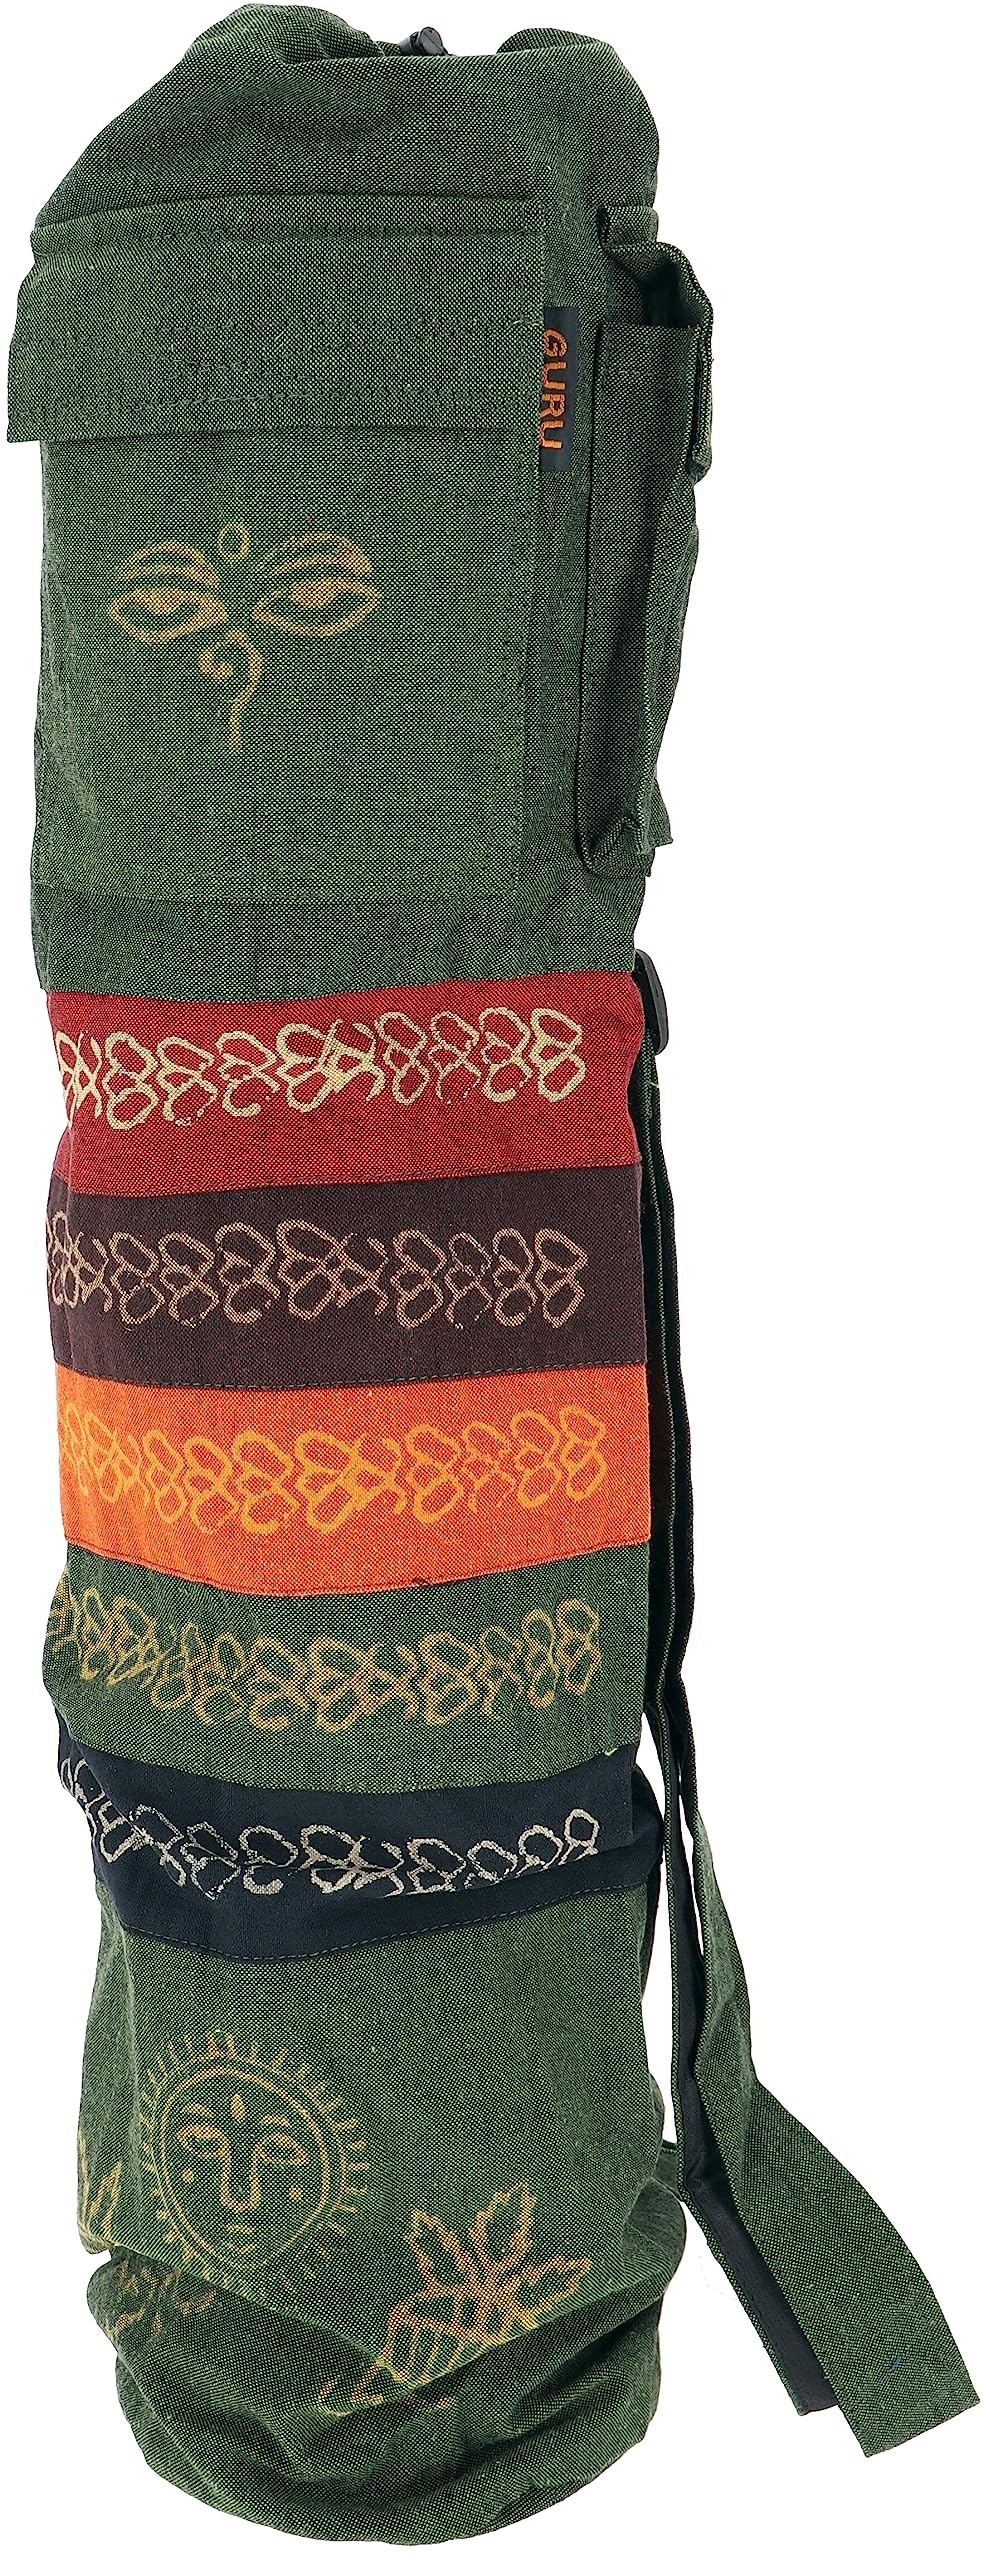 GURU SHOP Boho Yogamatten-Tasche, Batik Yogatasche aus Nepal - Grün, Herren/Damen, Baumwolle, Size:One Size, 70x23x13 cm, Taschen für Yogamatten - Einheitsgröße